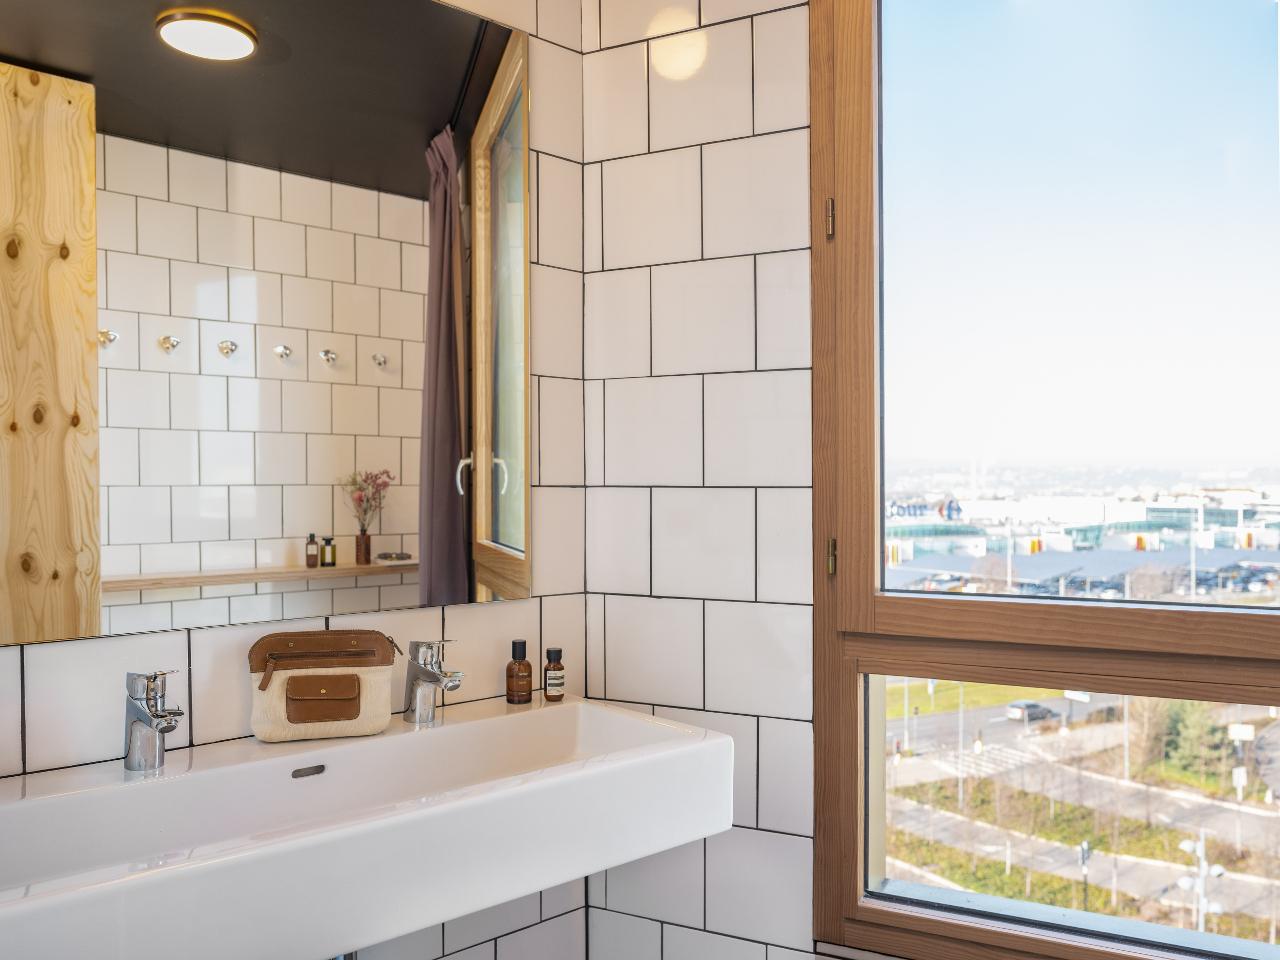 Logement GreenGo: EkloLit dans dortoir homme uniquement avec salle de bain privative - Image 4